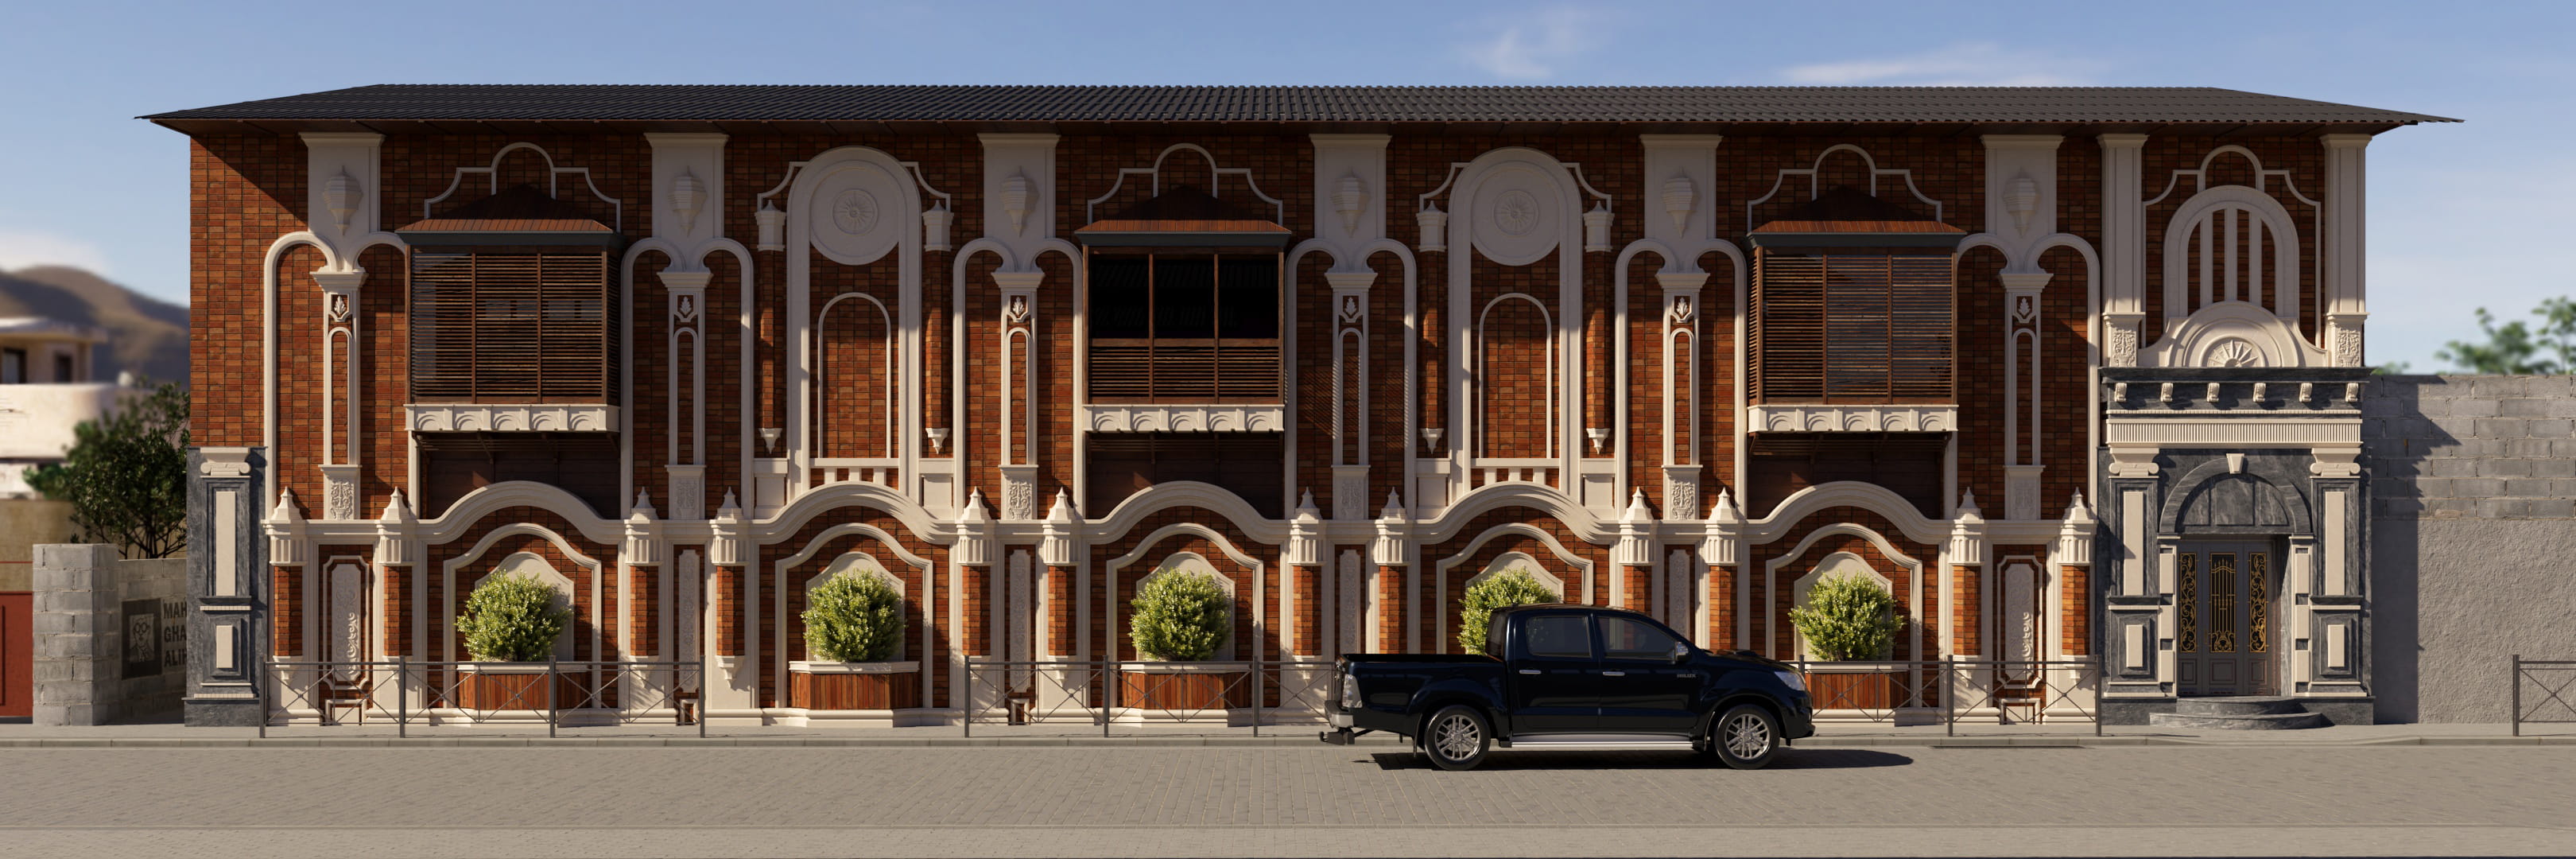 -facade-design-of-solo-building